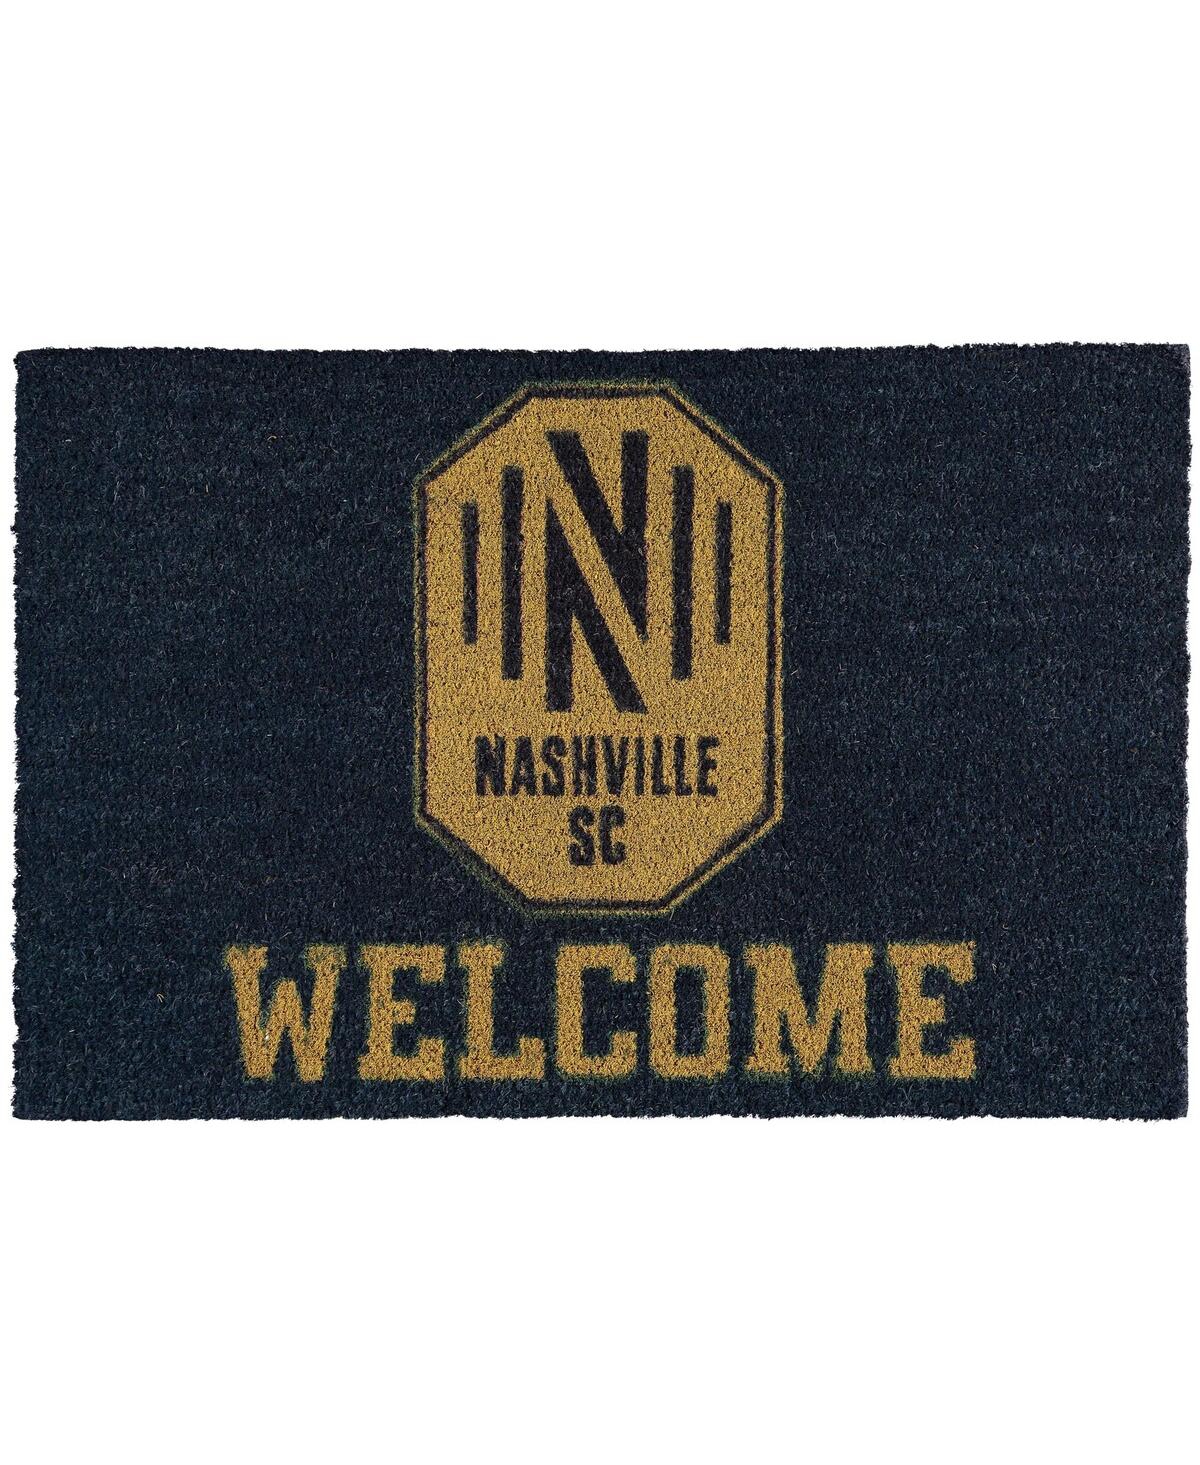 Nashville Sc Welcome Door Mat - Navy